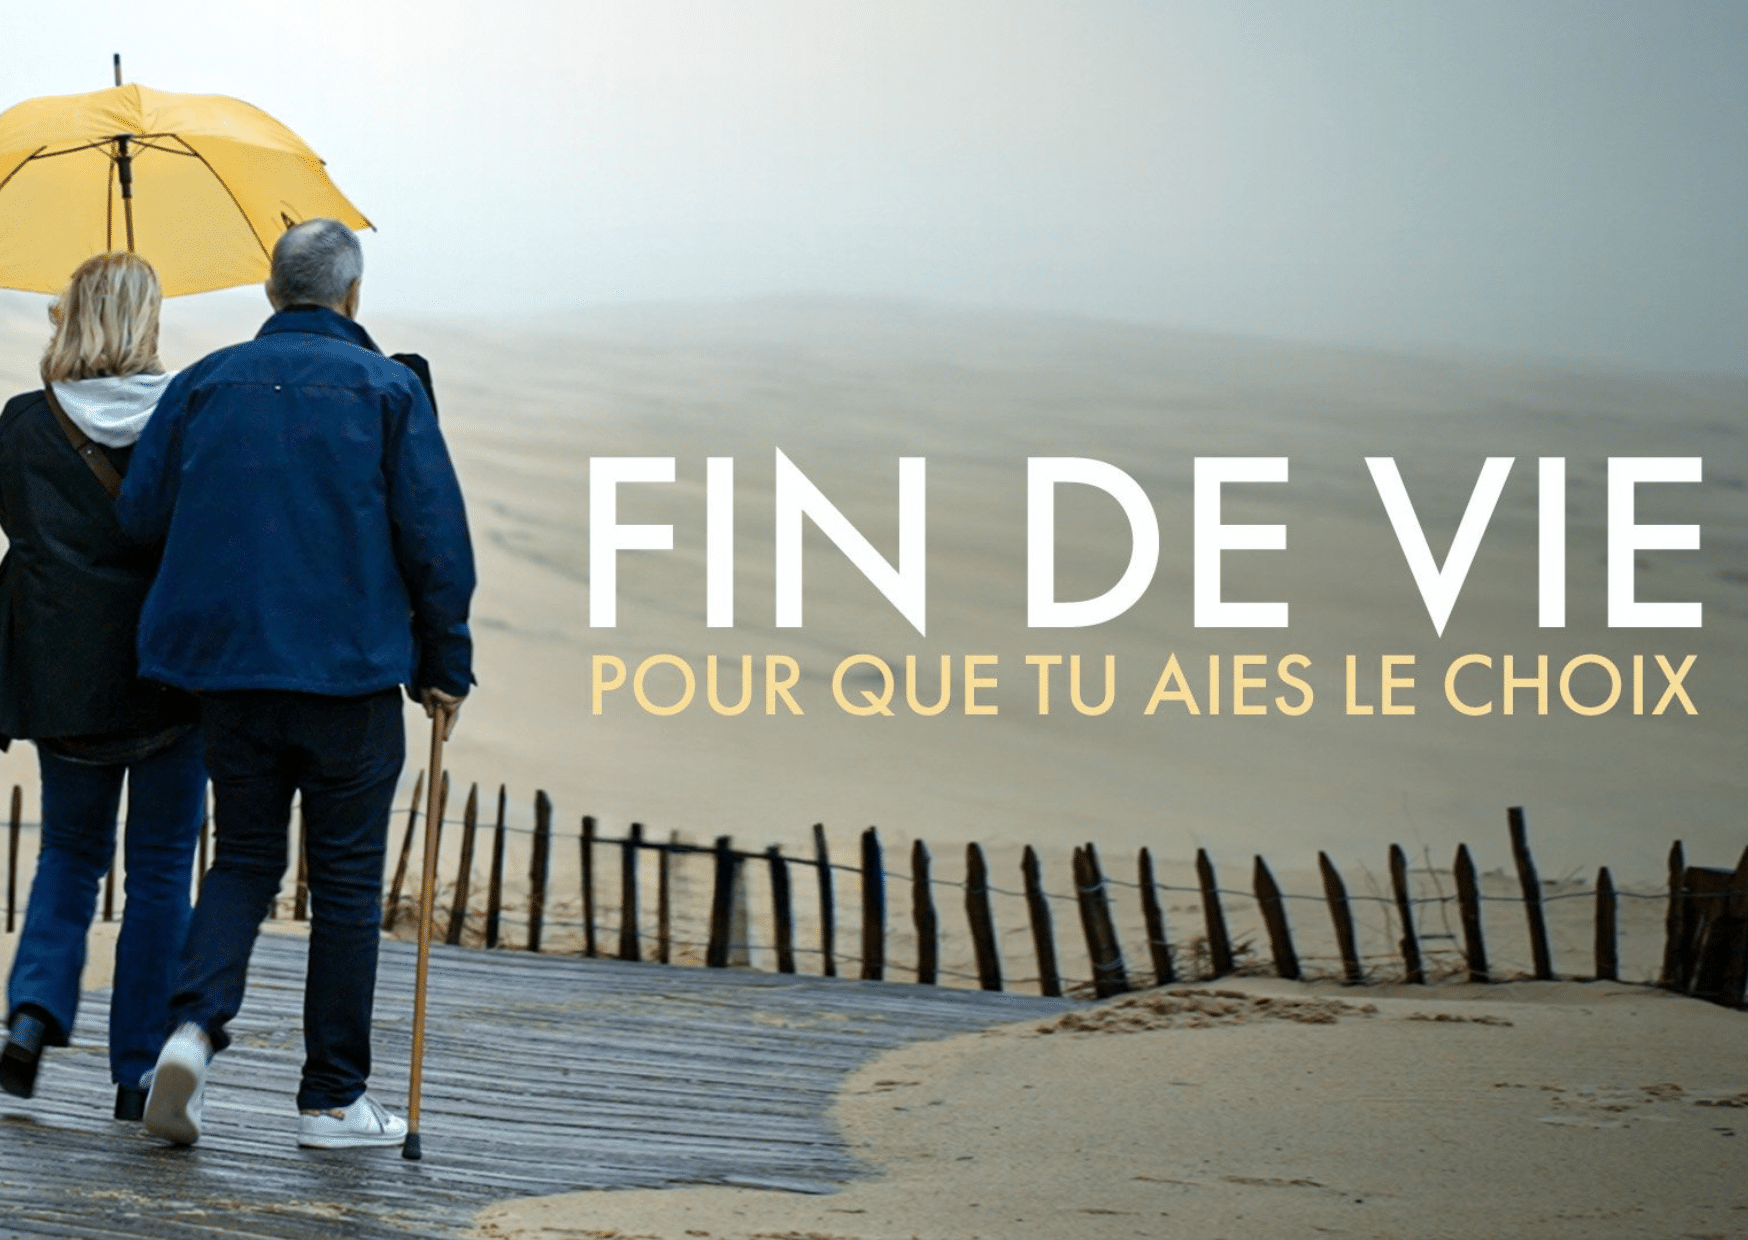 fin de vie : l'audiovisuel france 5 fait la promotion de l'euthanasie documentaire pour que tu aies le choix de marina carrère d'encausse 